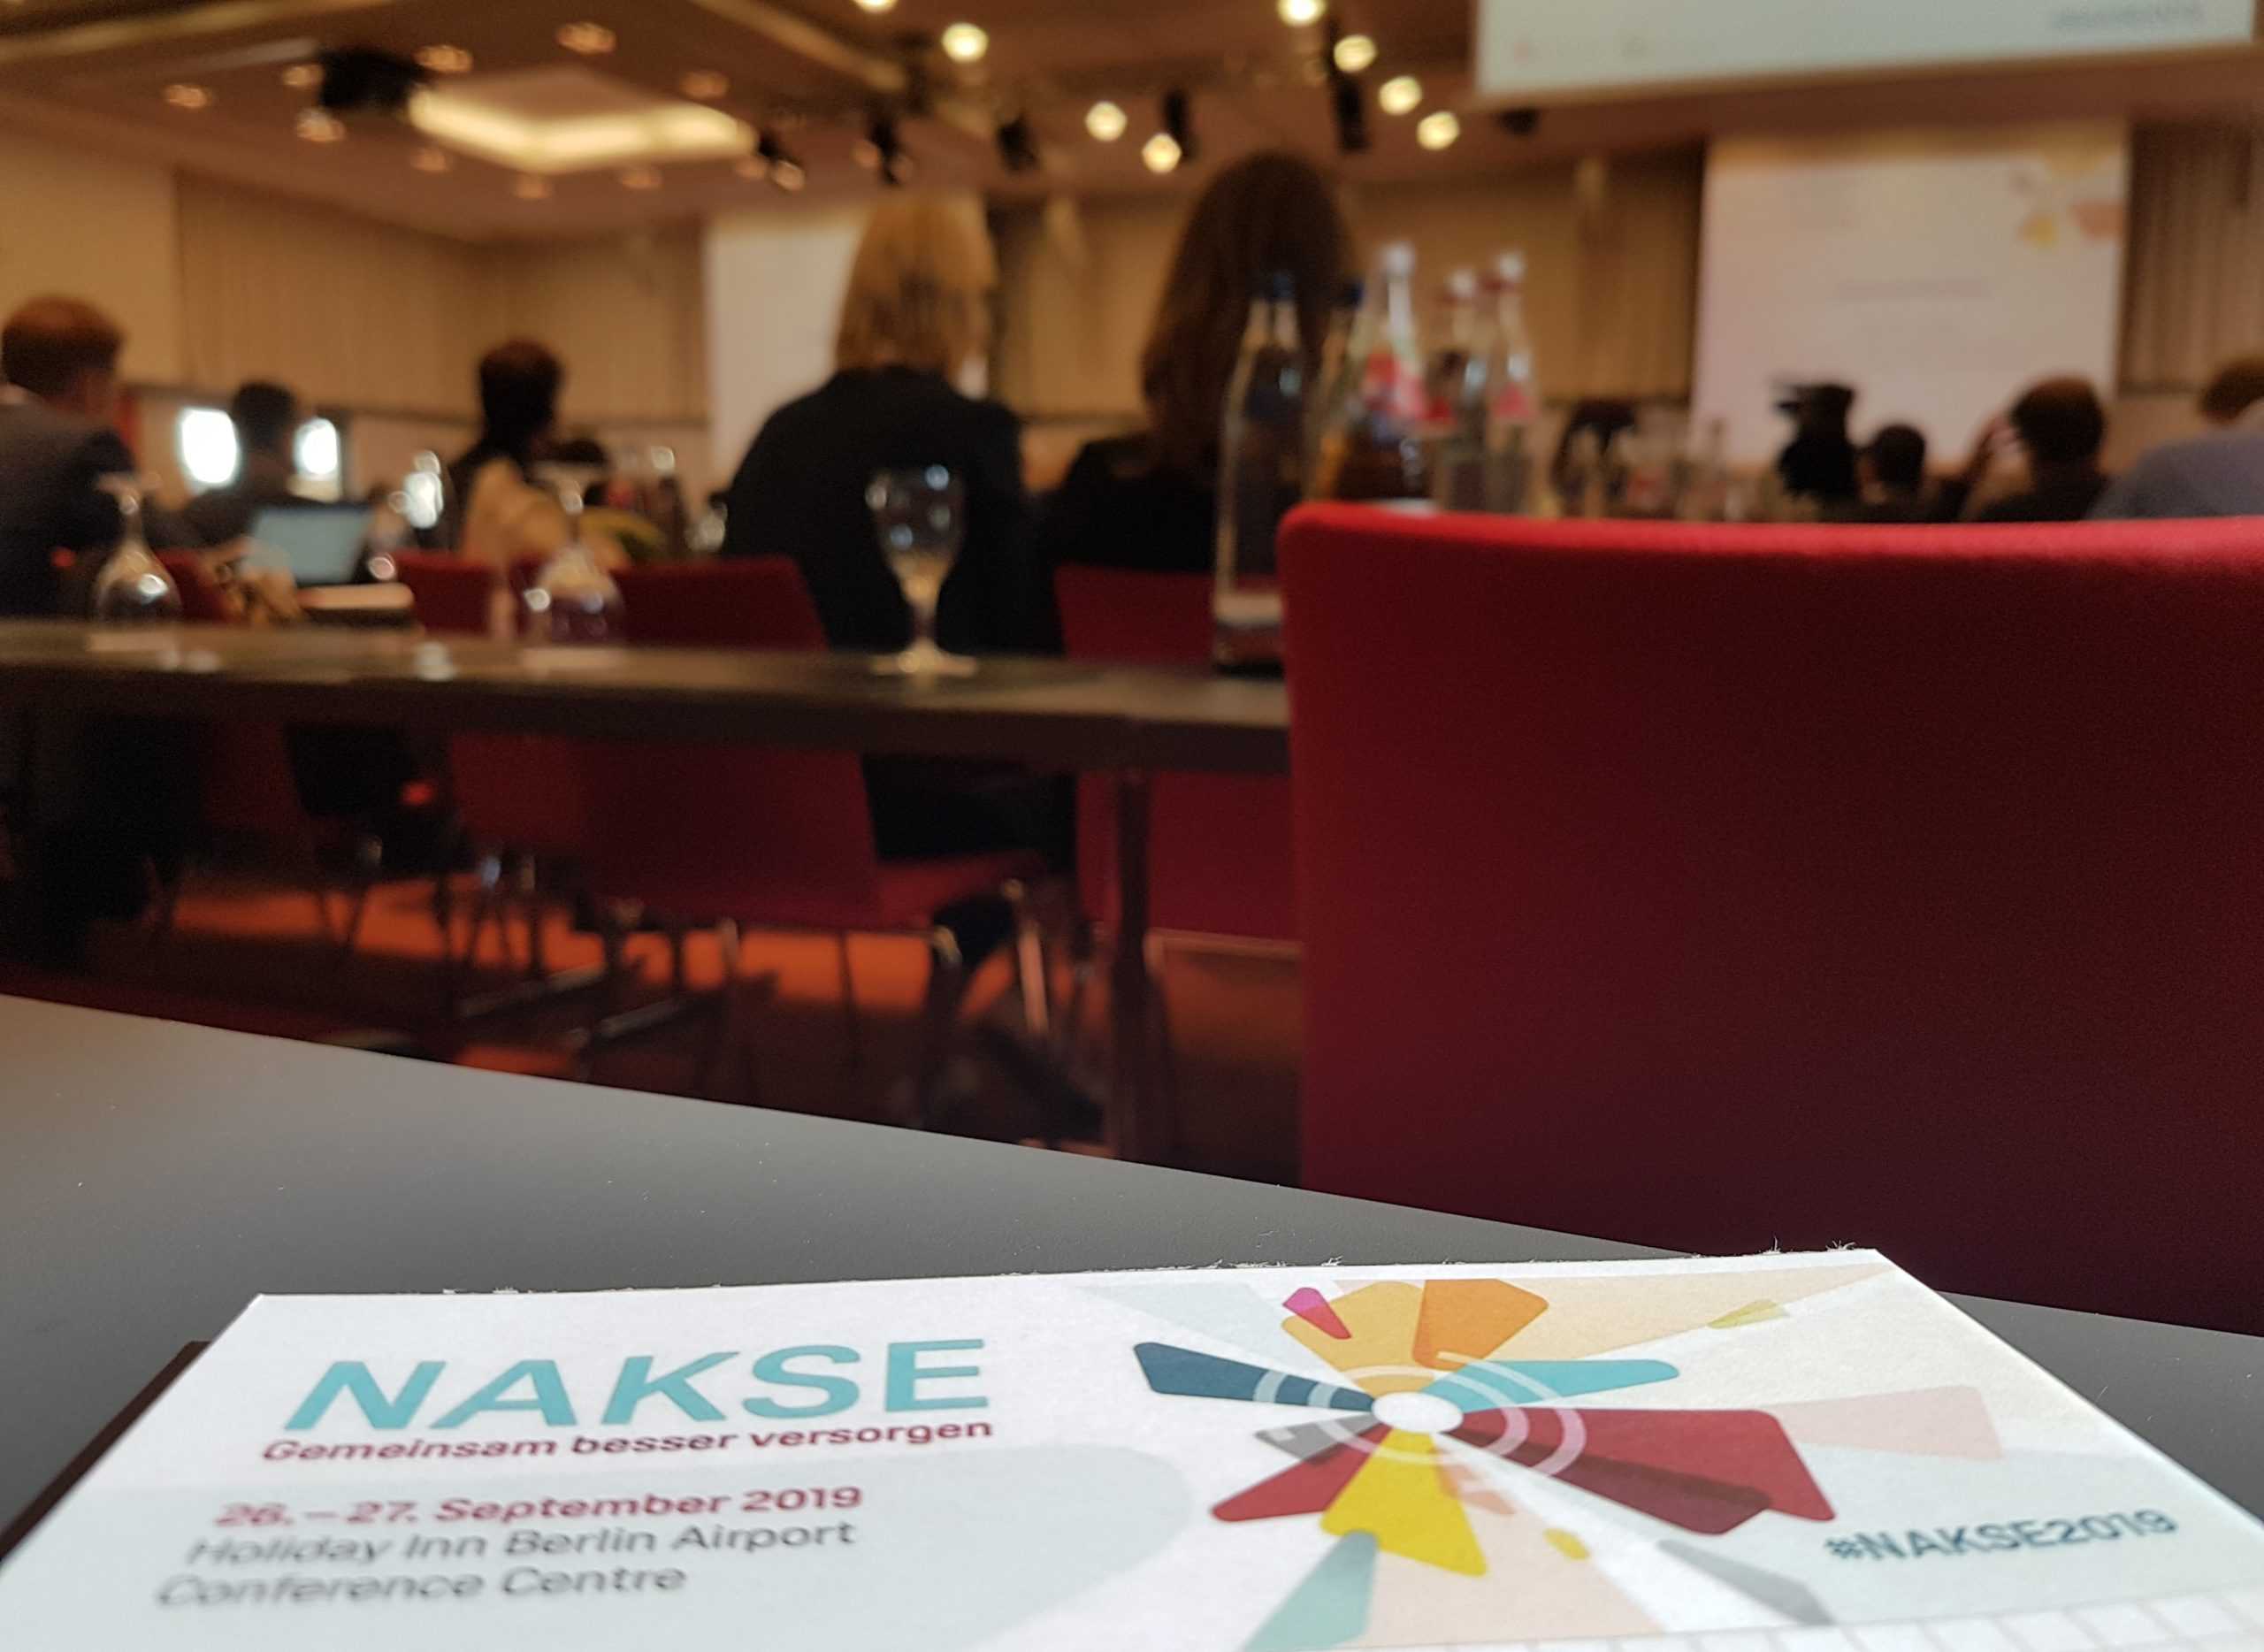 Gemeinsam besser versorgen! Nationale Konferenz zu Selten Erkrankungen (NAKSE 2019)